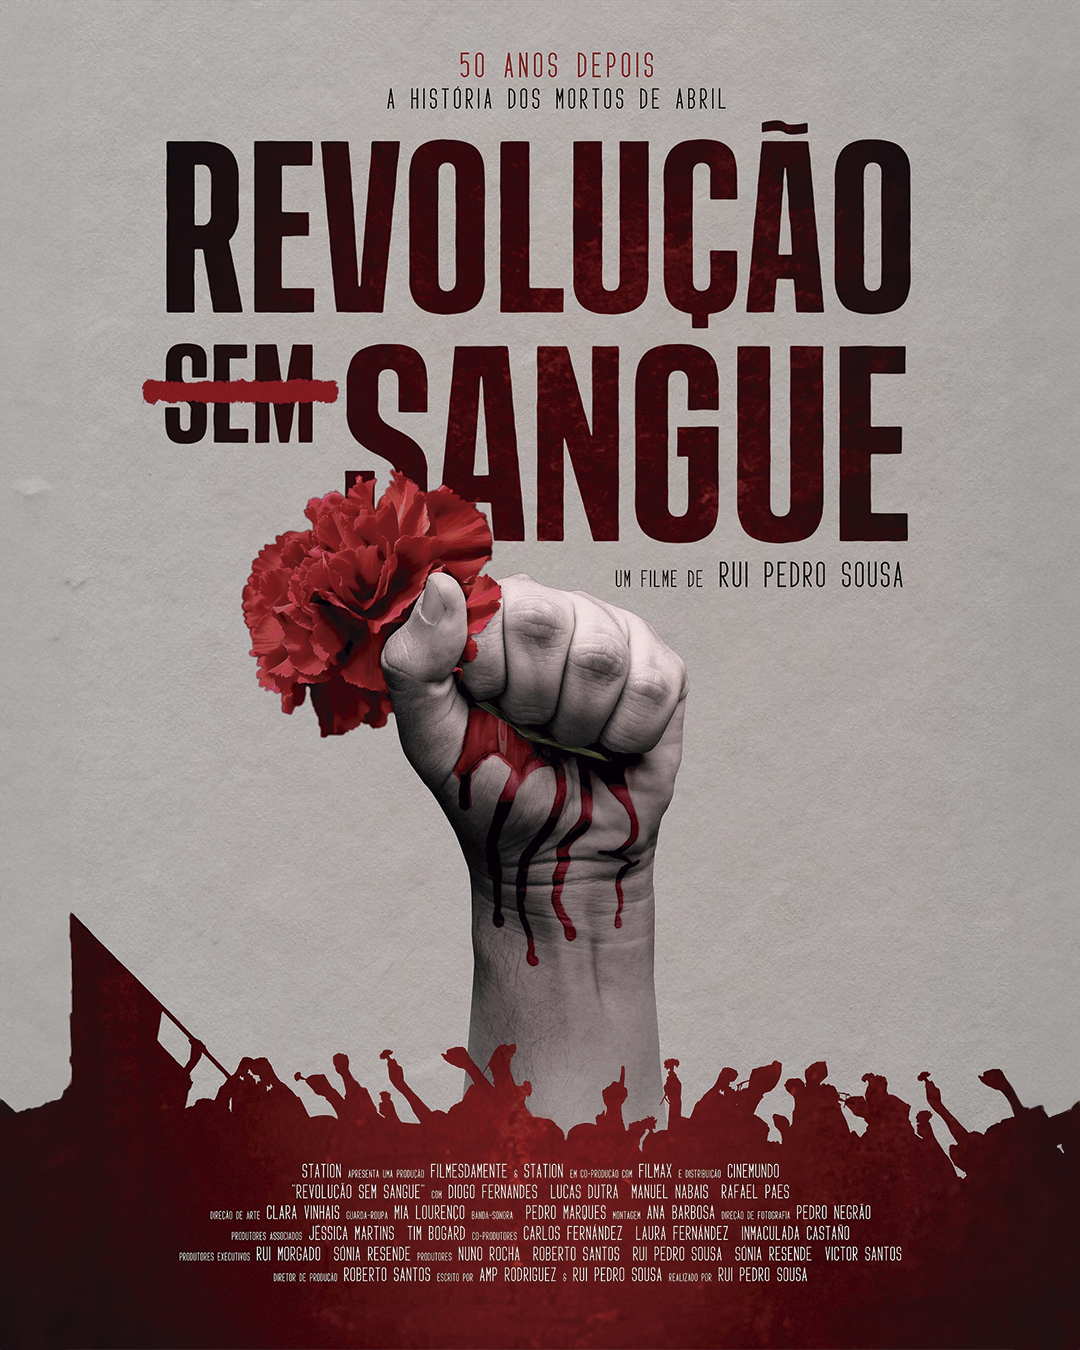 Capa Oficial do Evento Revoluçao (Sem) Sangue